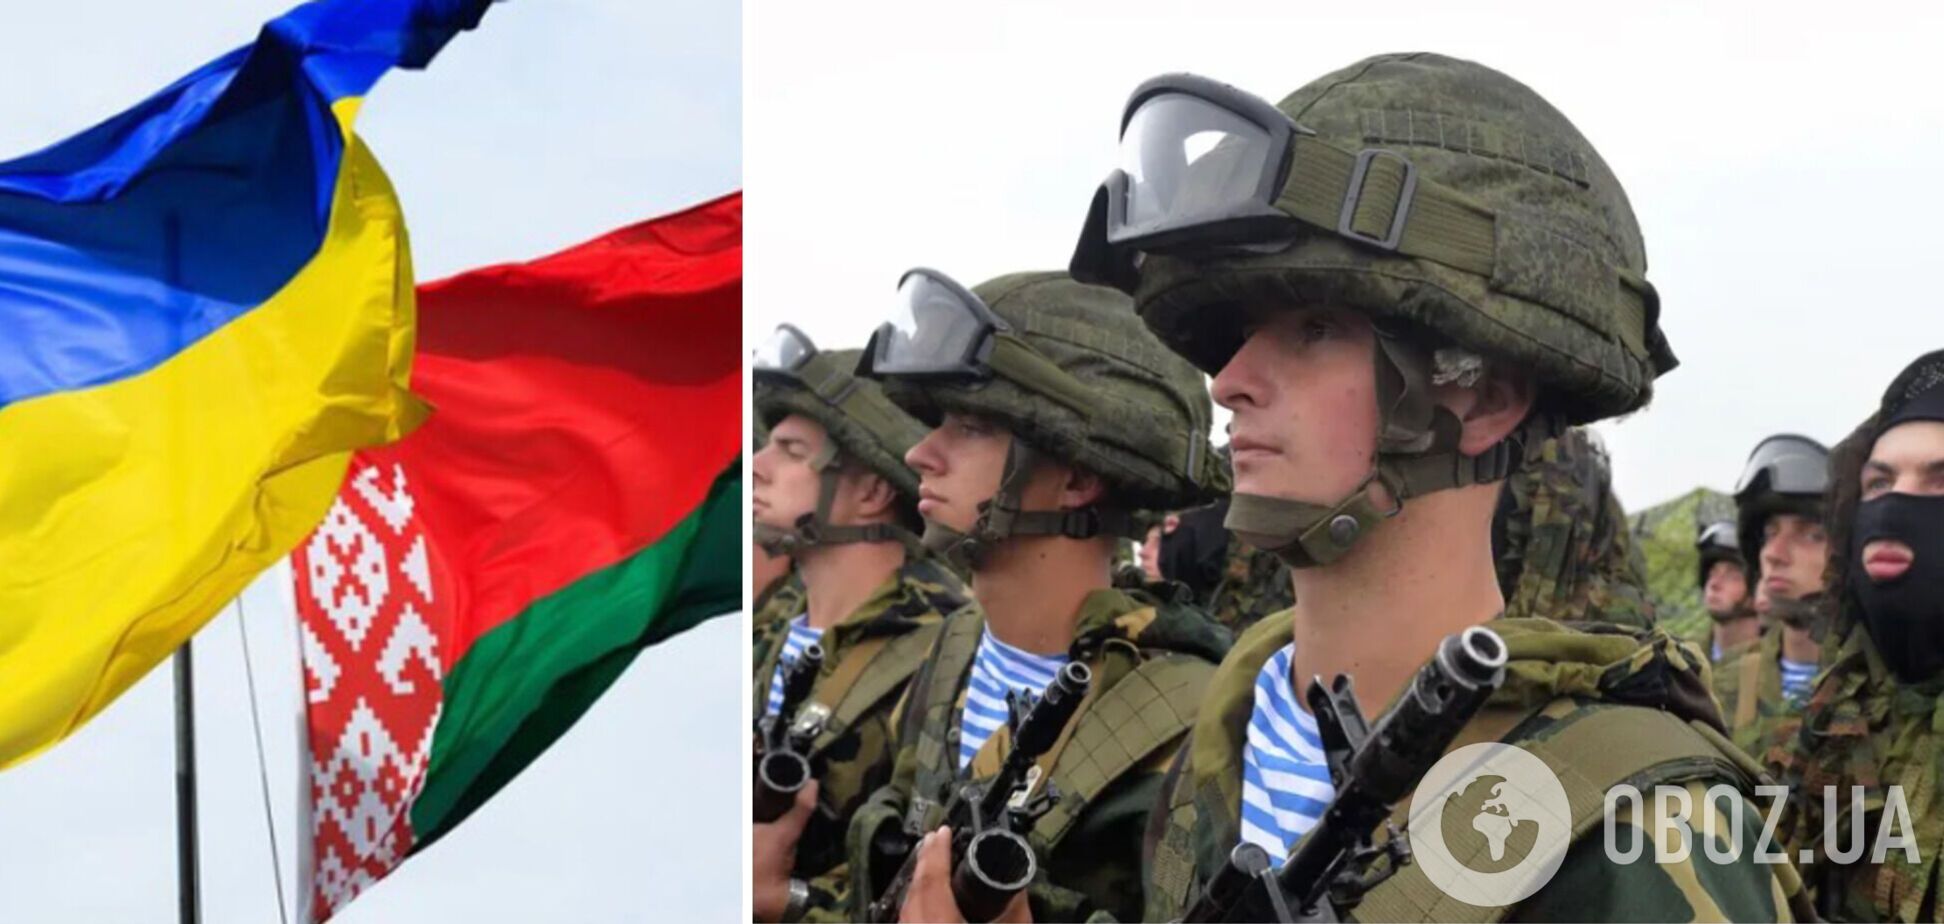 'Не провоцируйте нас': военные Беларуси записали циничное обращение к ВСУ, упомянув о 'братстве' народов. Видео